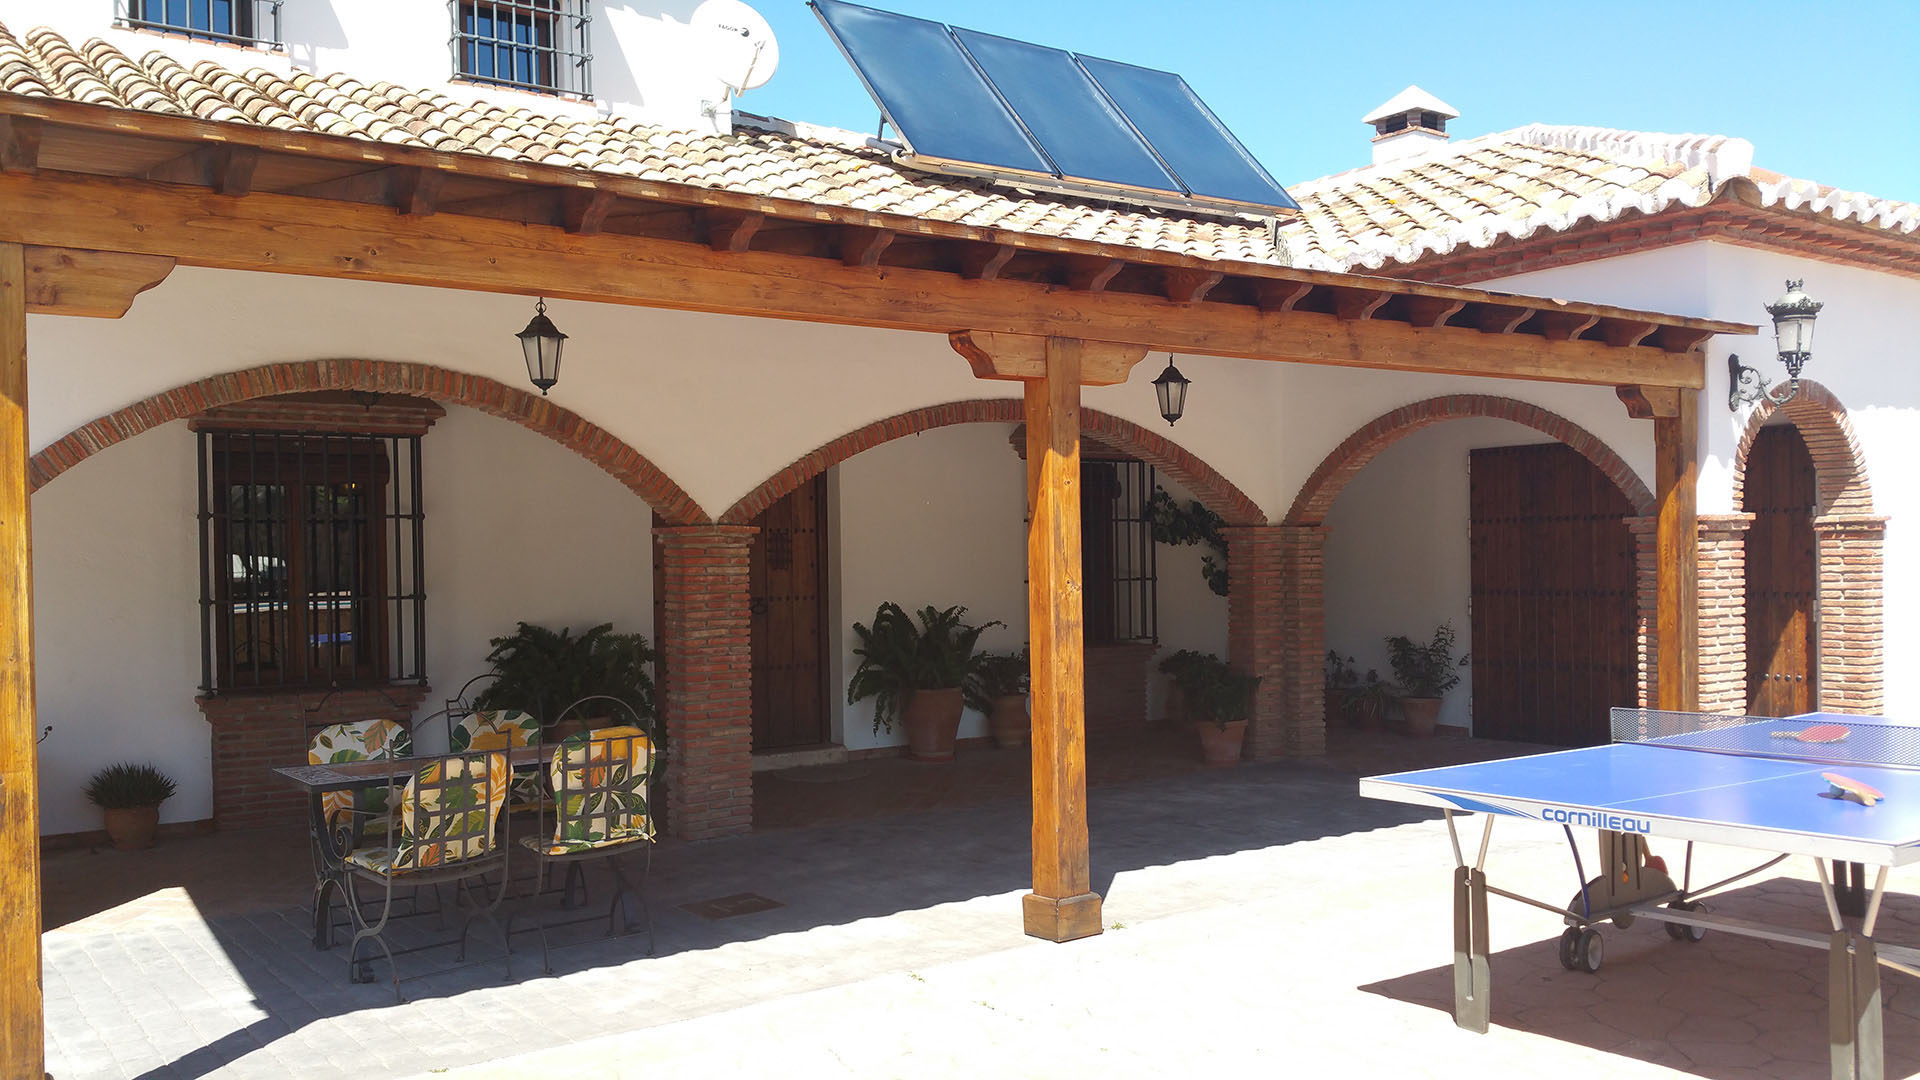 Porche de la casa rural con techado de tejas sujeto por columnas y arcos de estilo andaluz